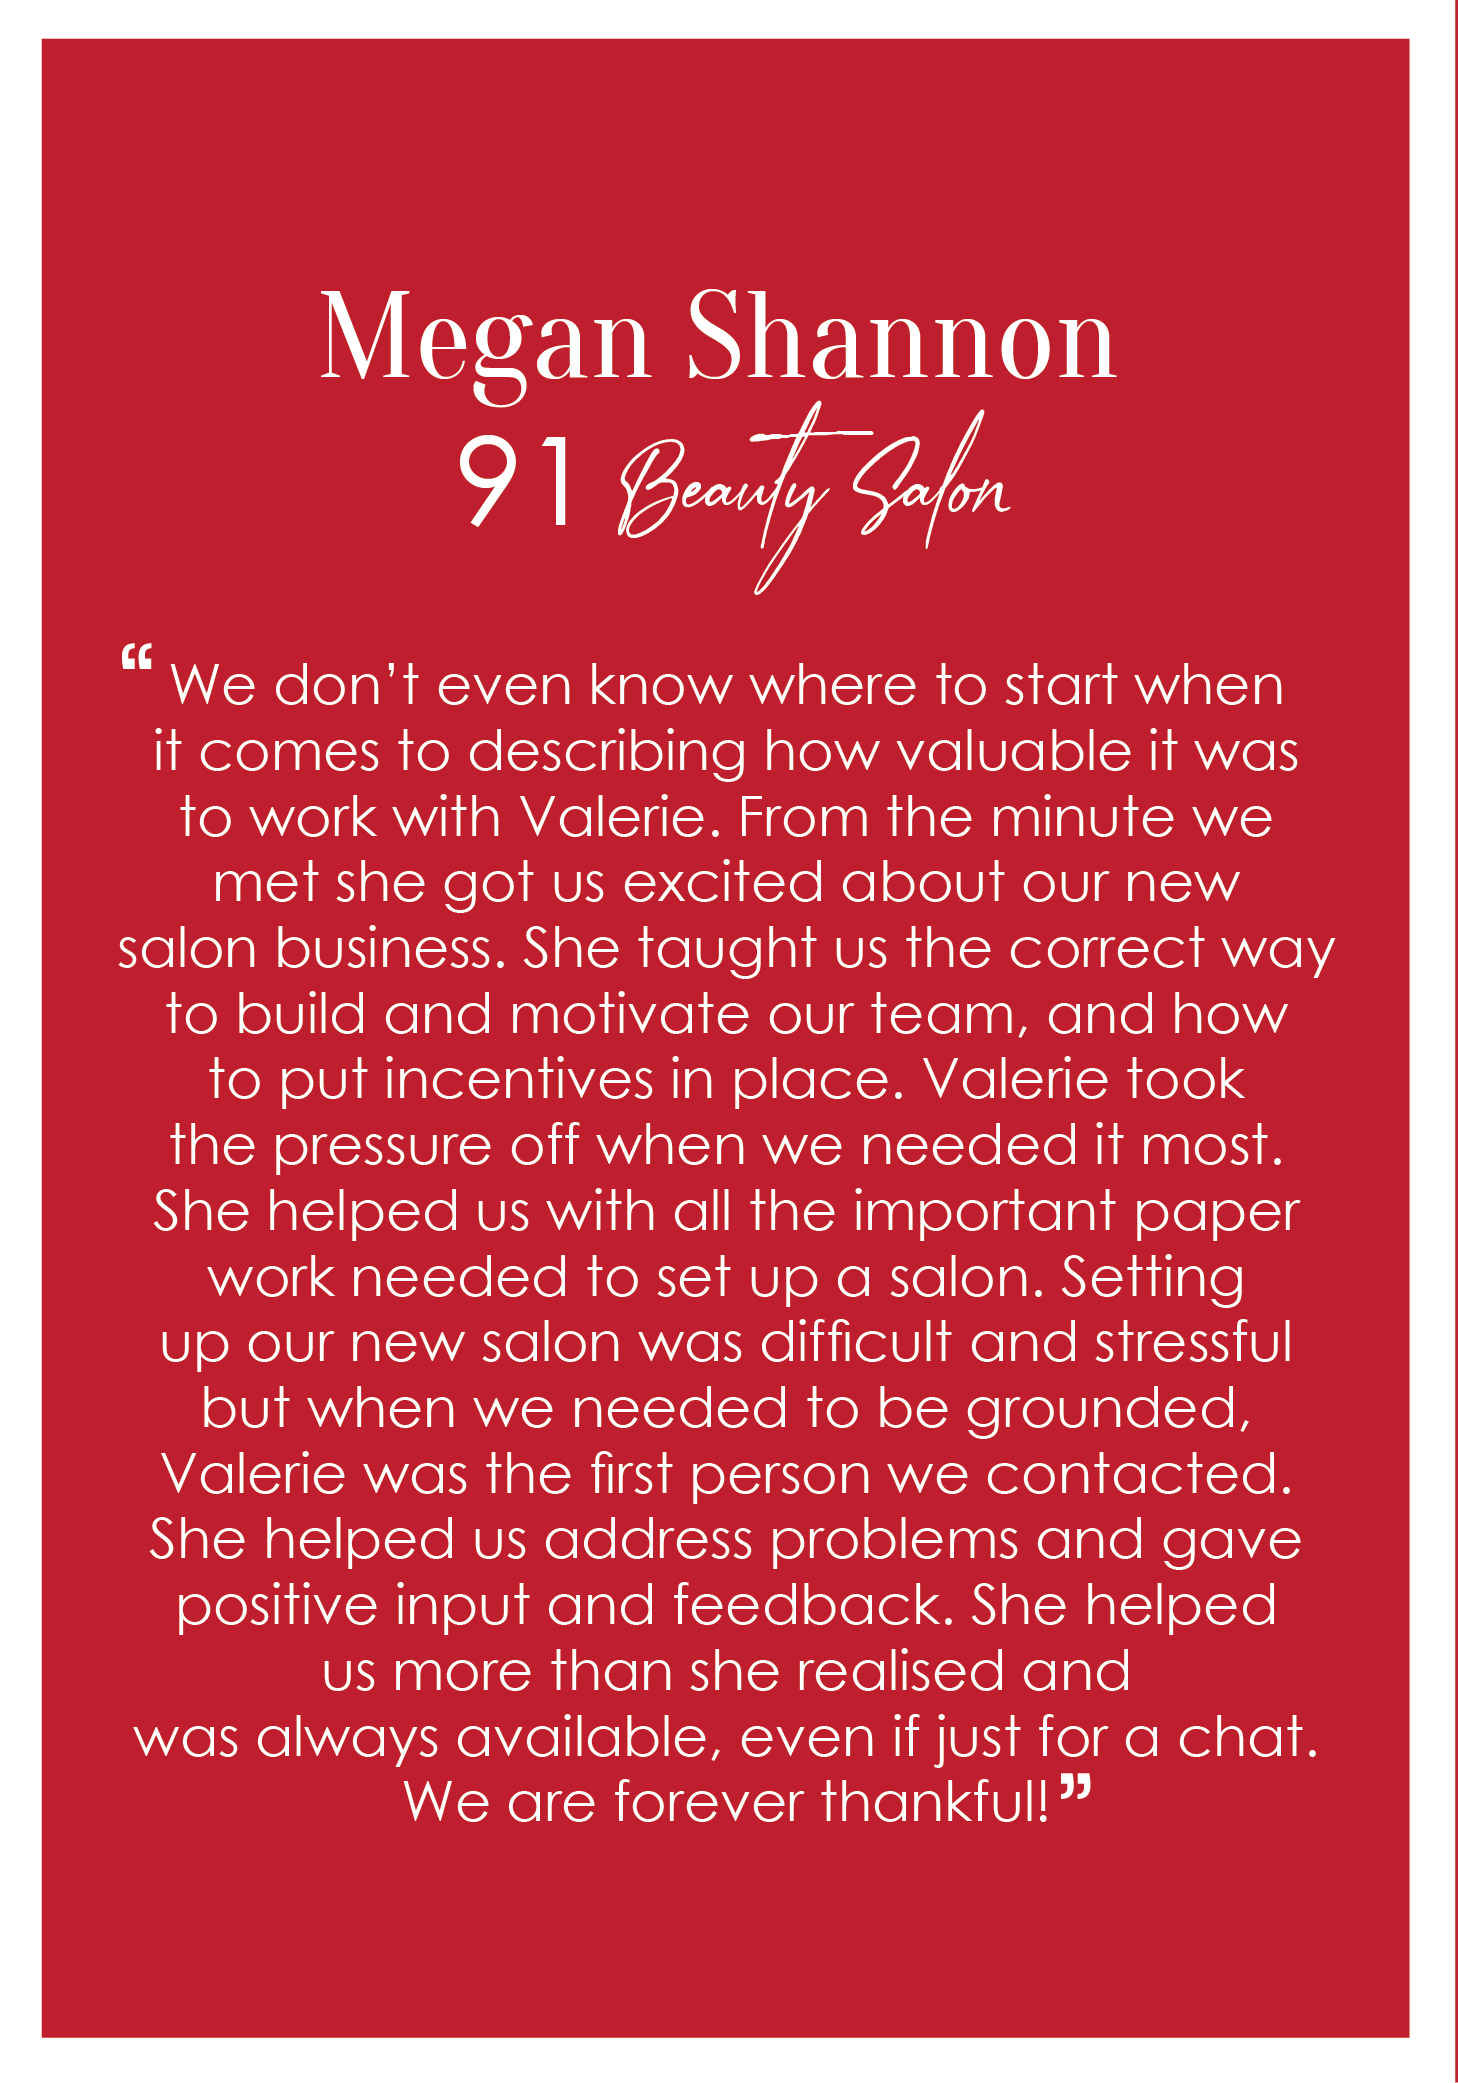 Client Testim Megan Shannon 91 Beauty Salon new 1000-01